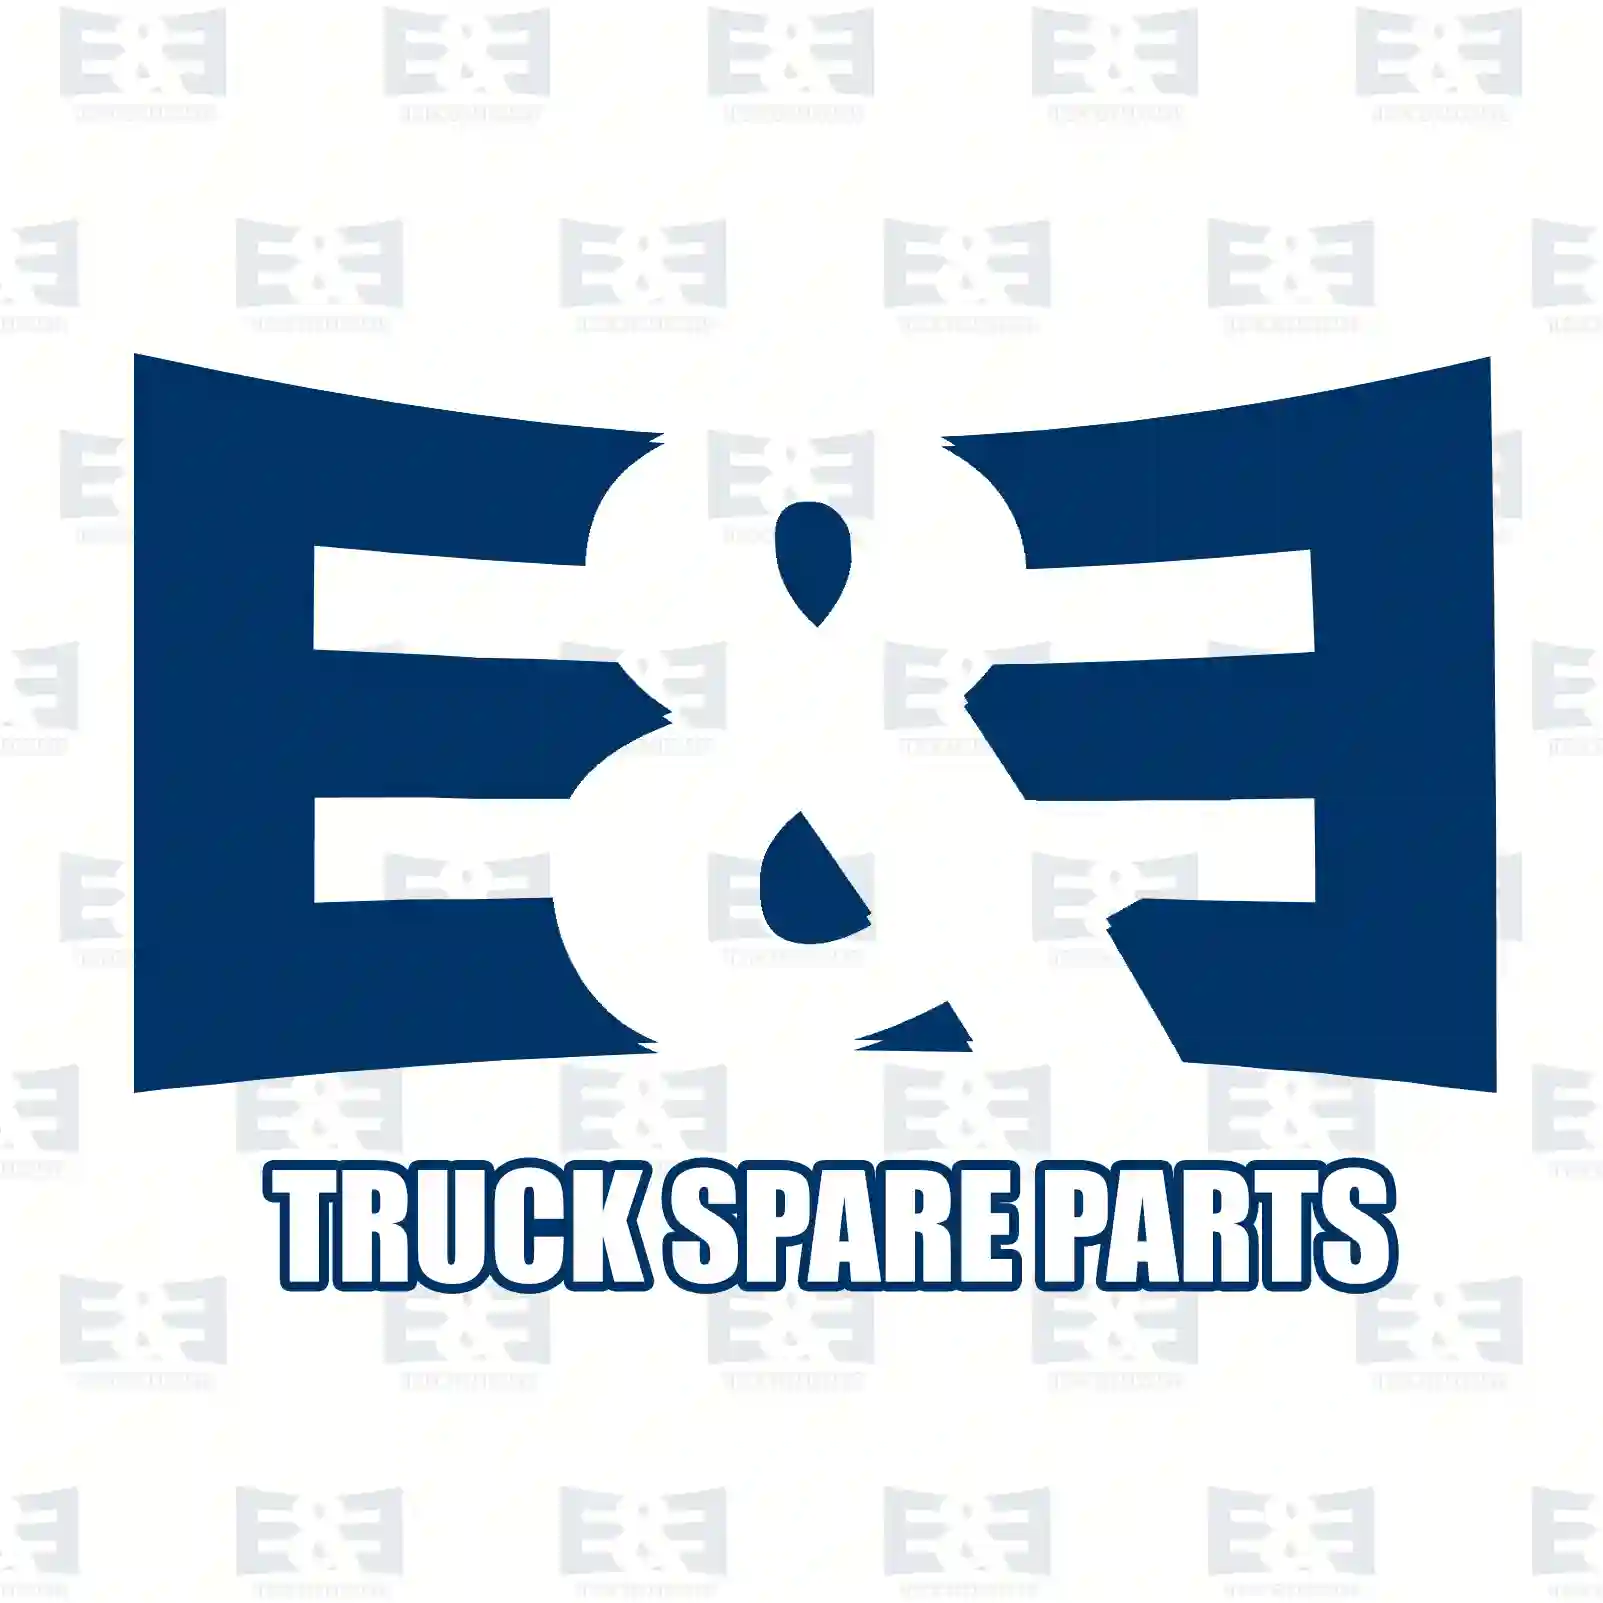 Gear shift lever, 2E2278510, #YOK ||  2E2278510 E&E Truck Spare Parts | Truck Spare Parts, Auotomotive Spare Parts Gear shift lever, 2E2278510, #YOK ||  2E2278510 E&E Truck Spare Parts | Truck Spare Parts, Auotomotive Spare Parts